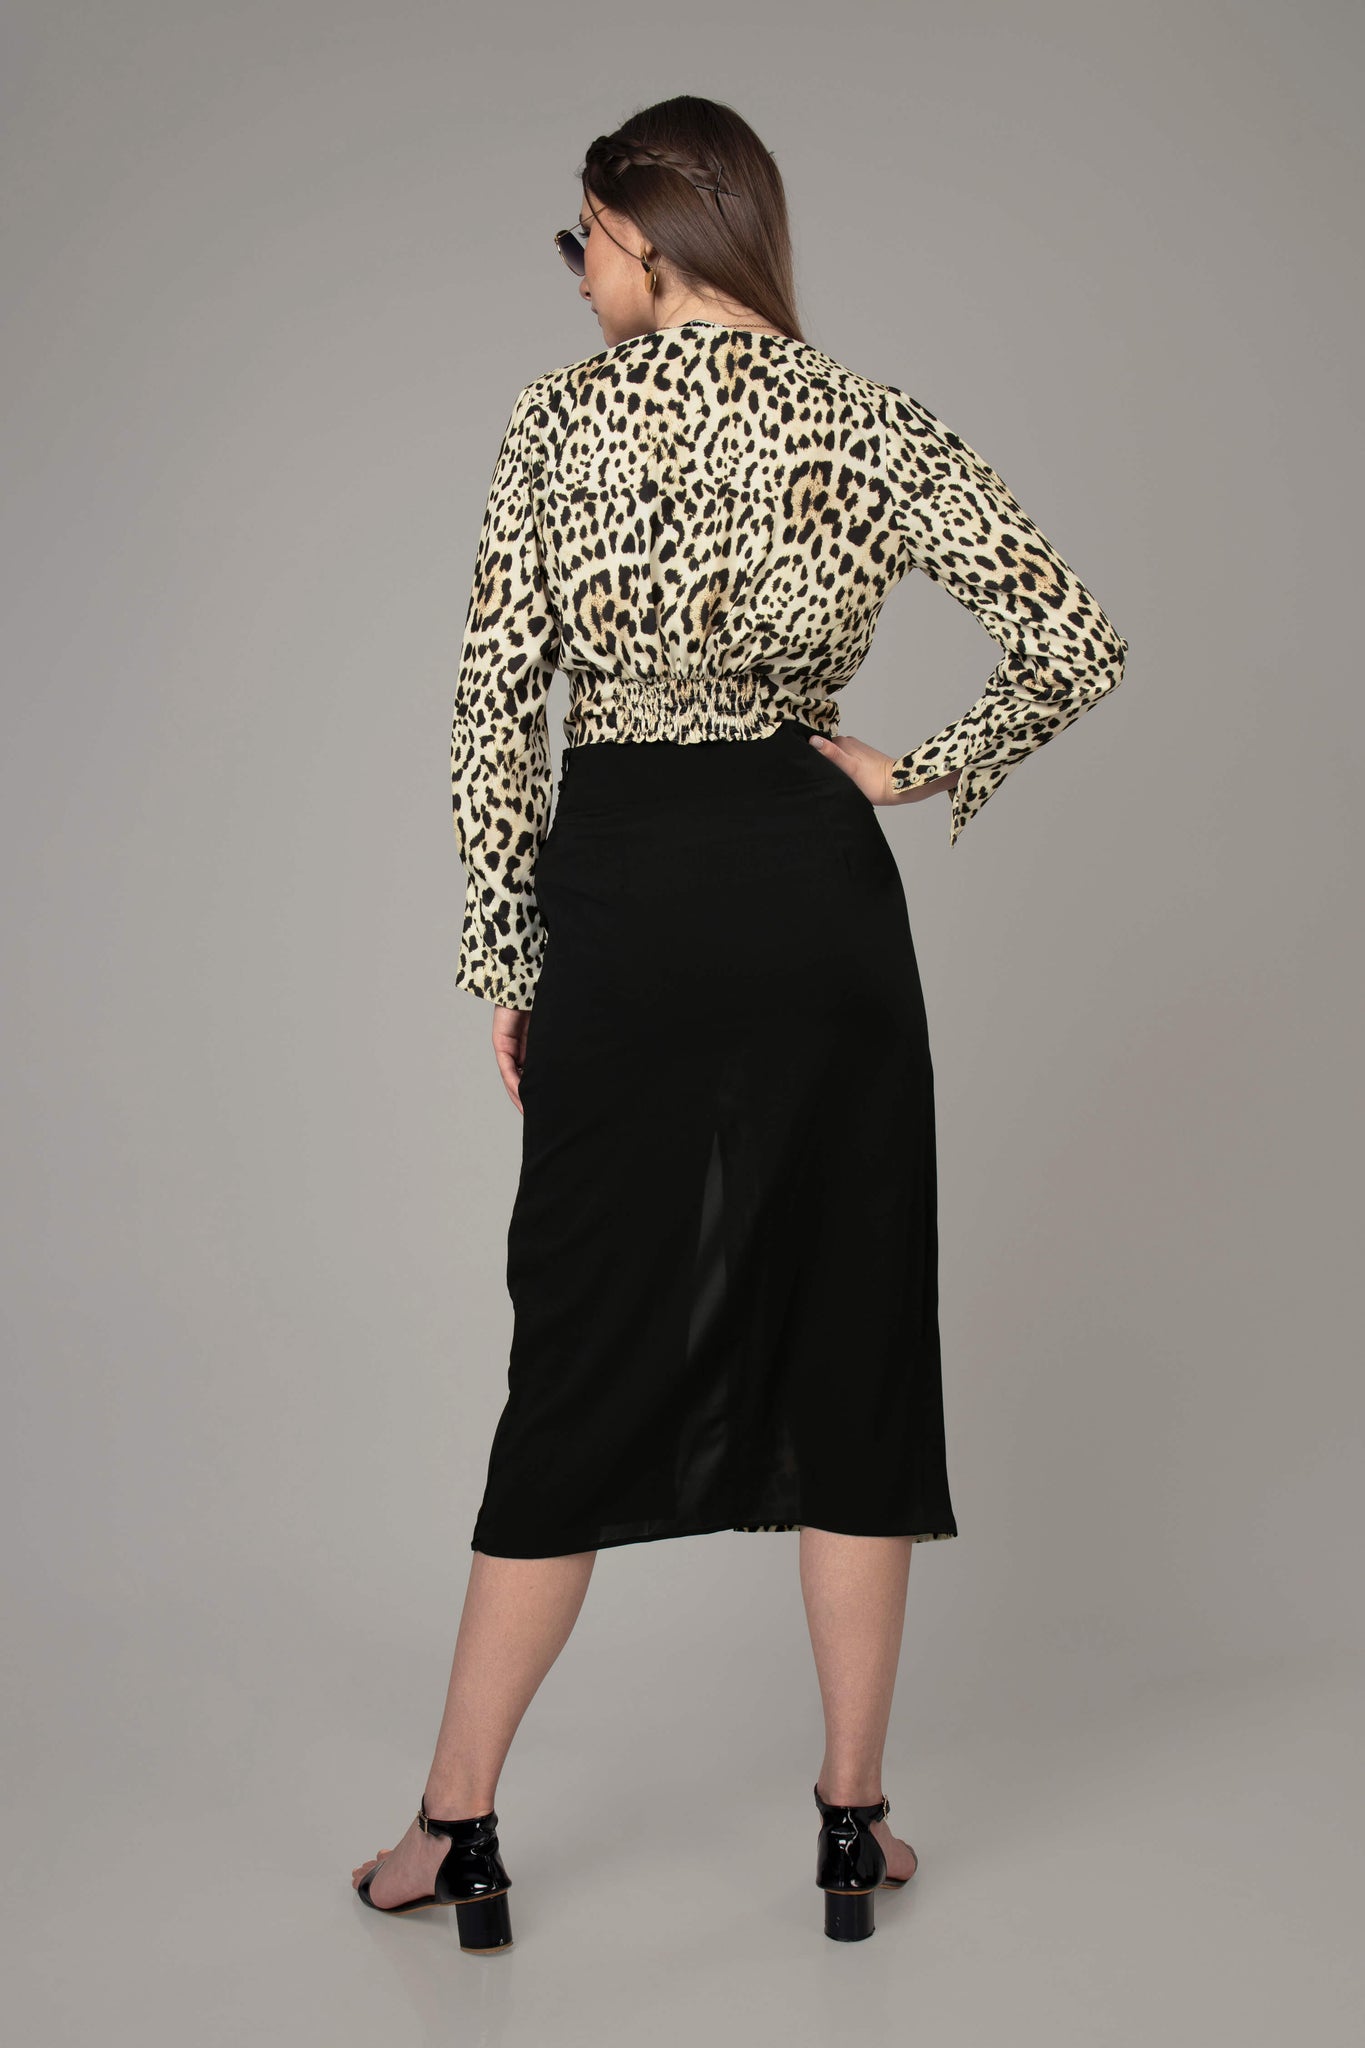 Leopard Print Skirt Co-Ord Set For Women